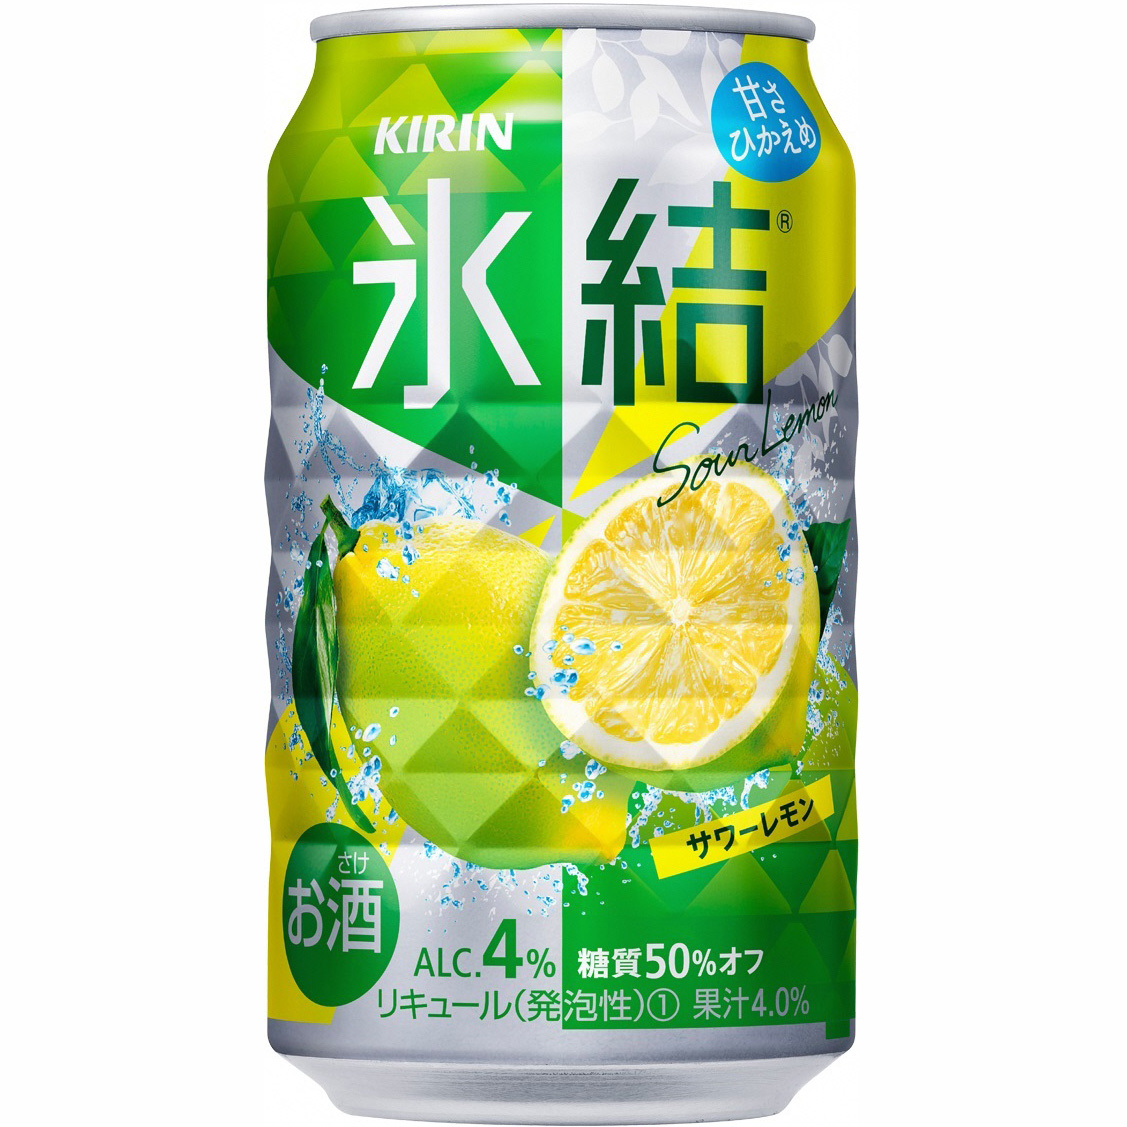 キリン 氷結ストロング サワーレモン 350ml 1ケース(24本)の返納品画像イメージ